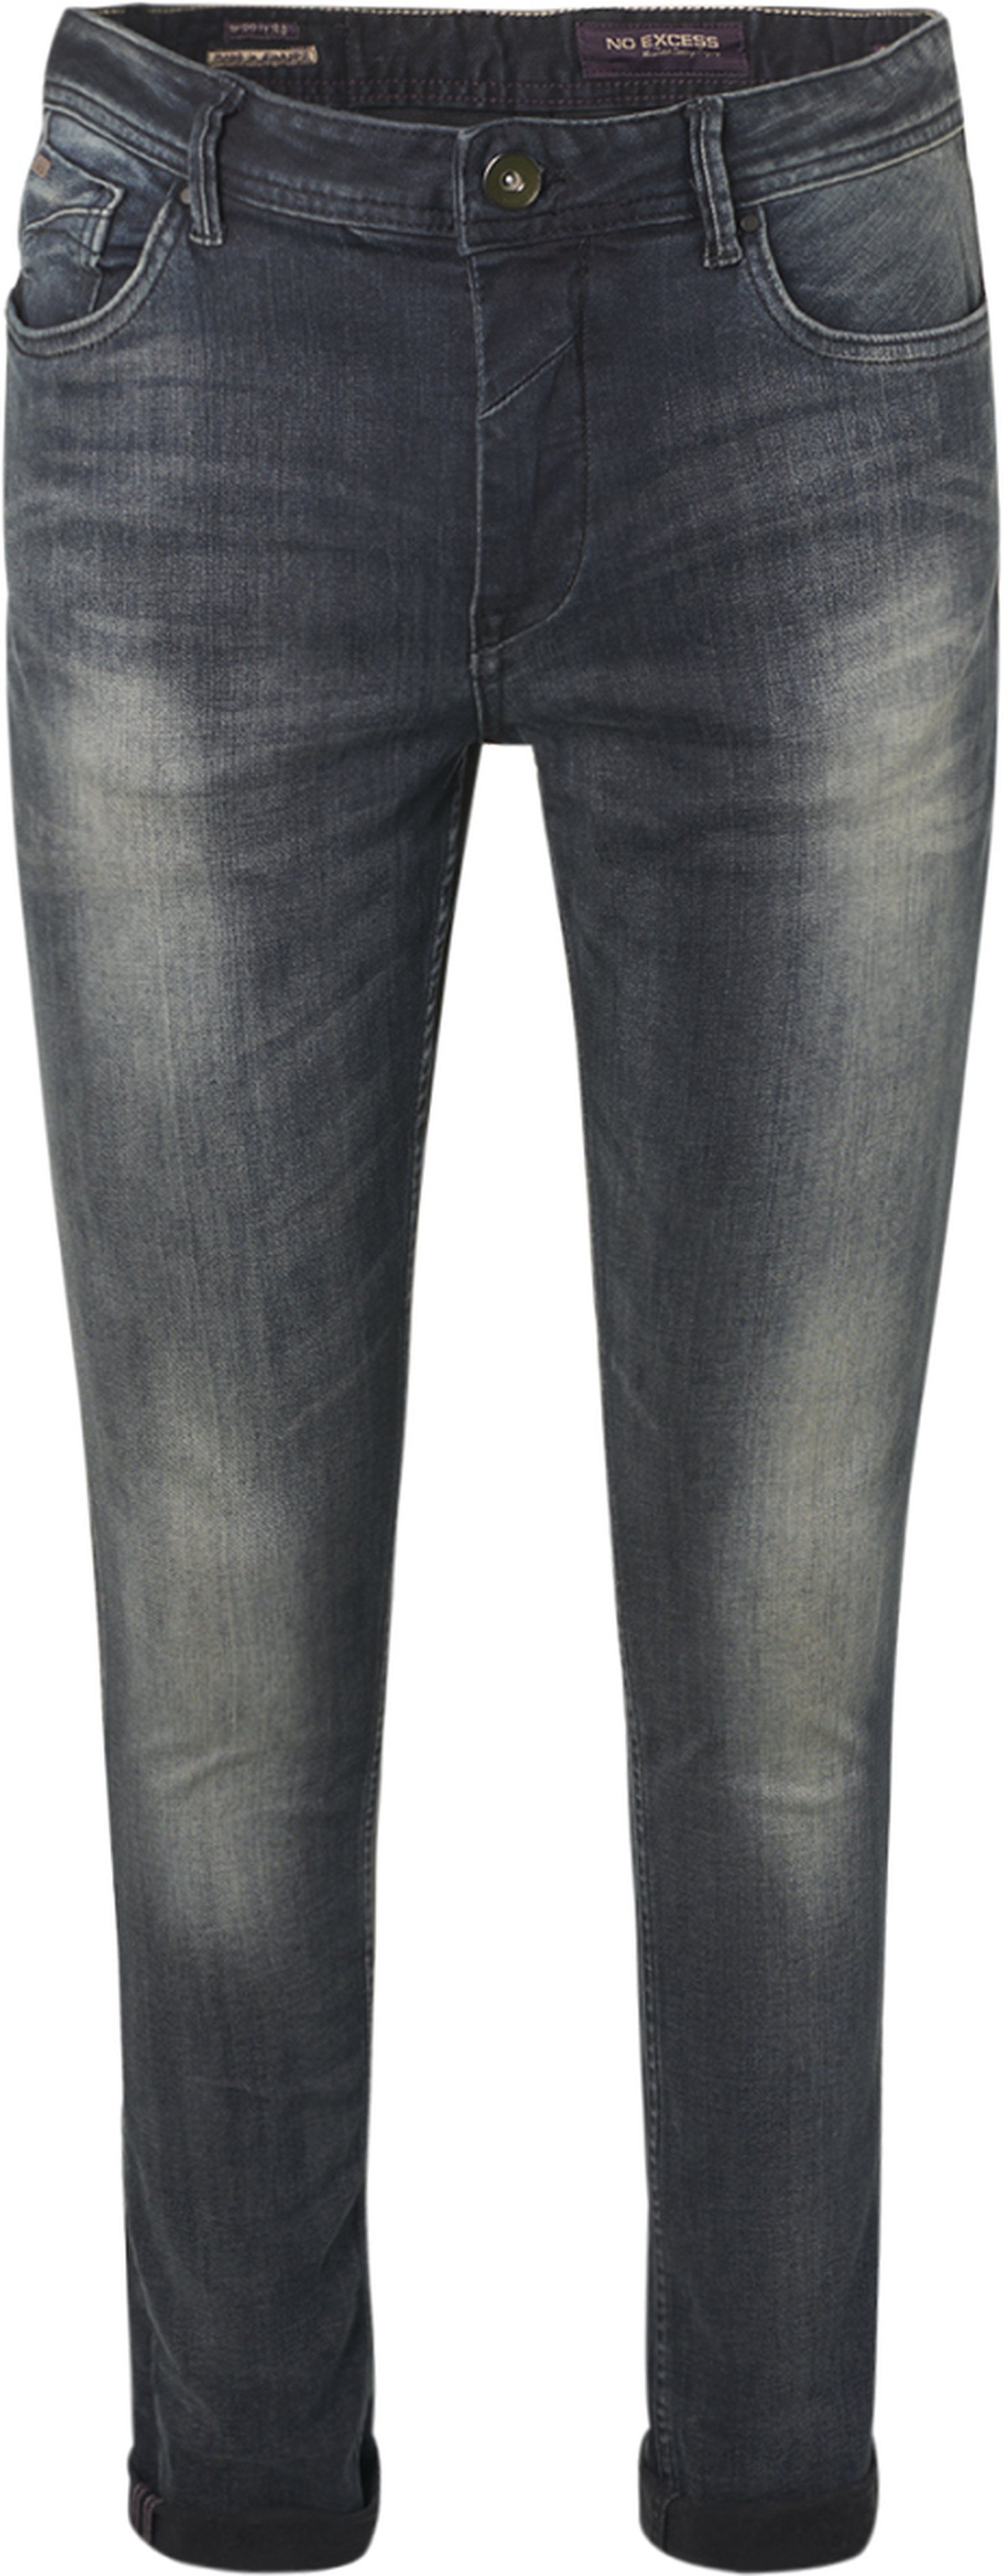 No-Excess Jeans 710 Denim Dark Grey Grey size W 30